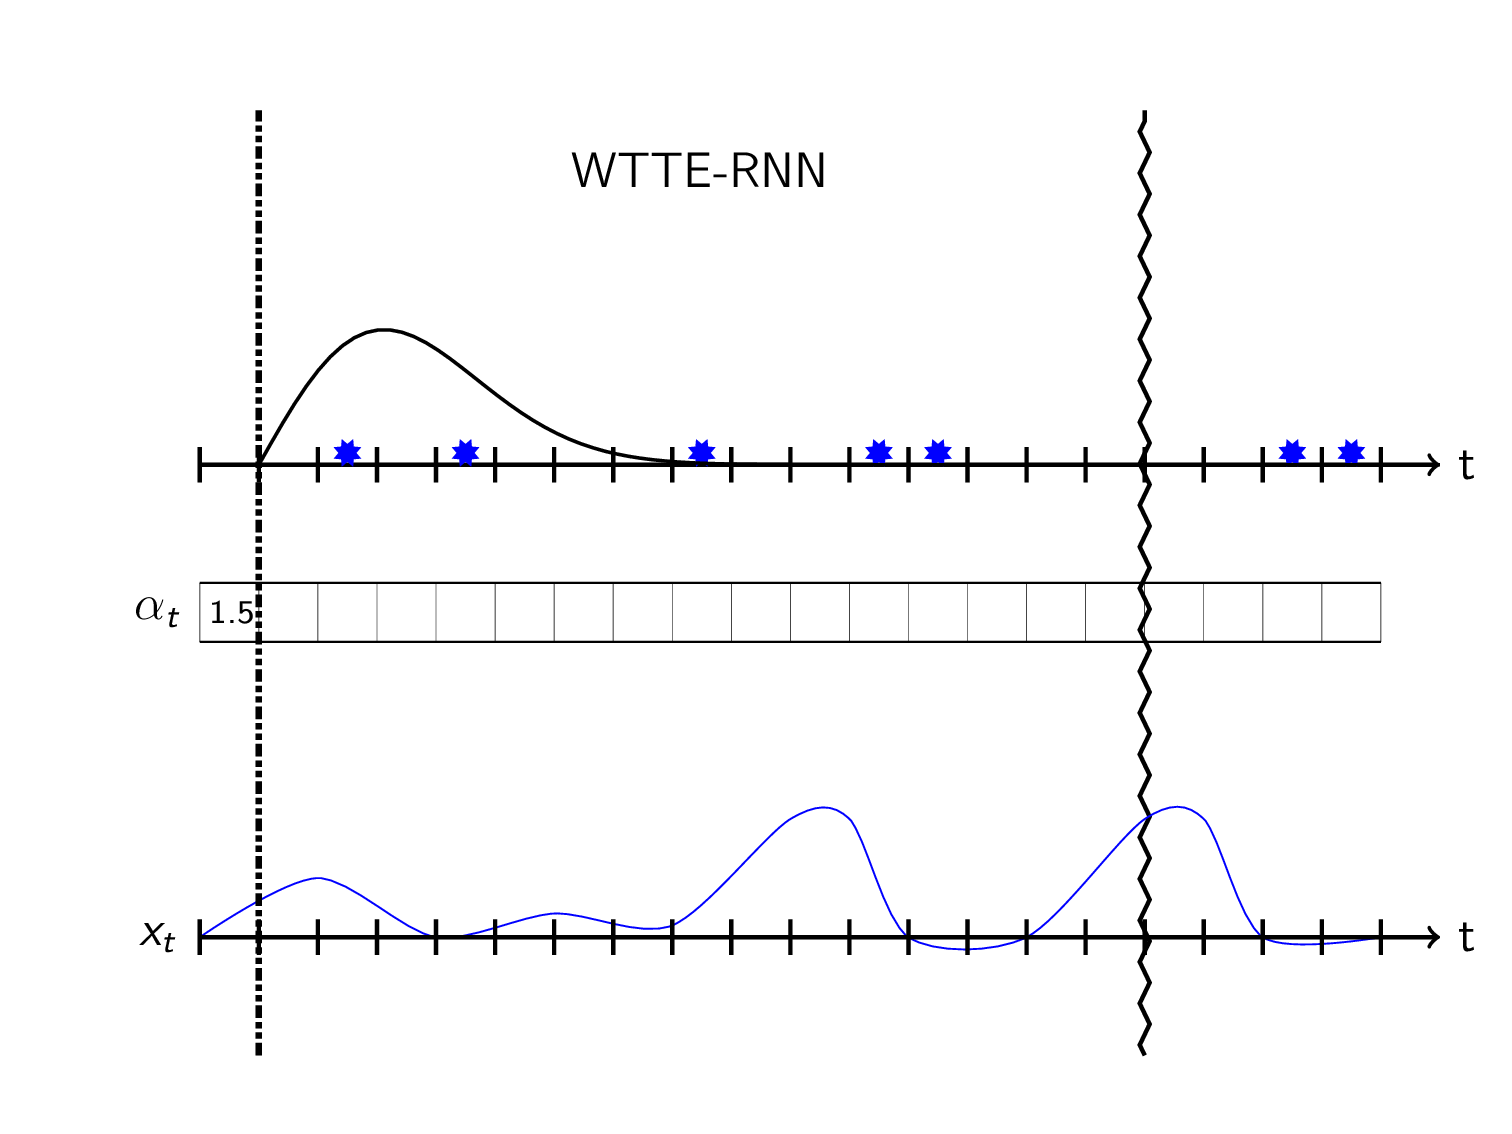 WTTE-RNN prediction over a timeline